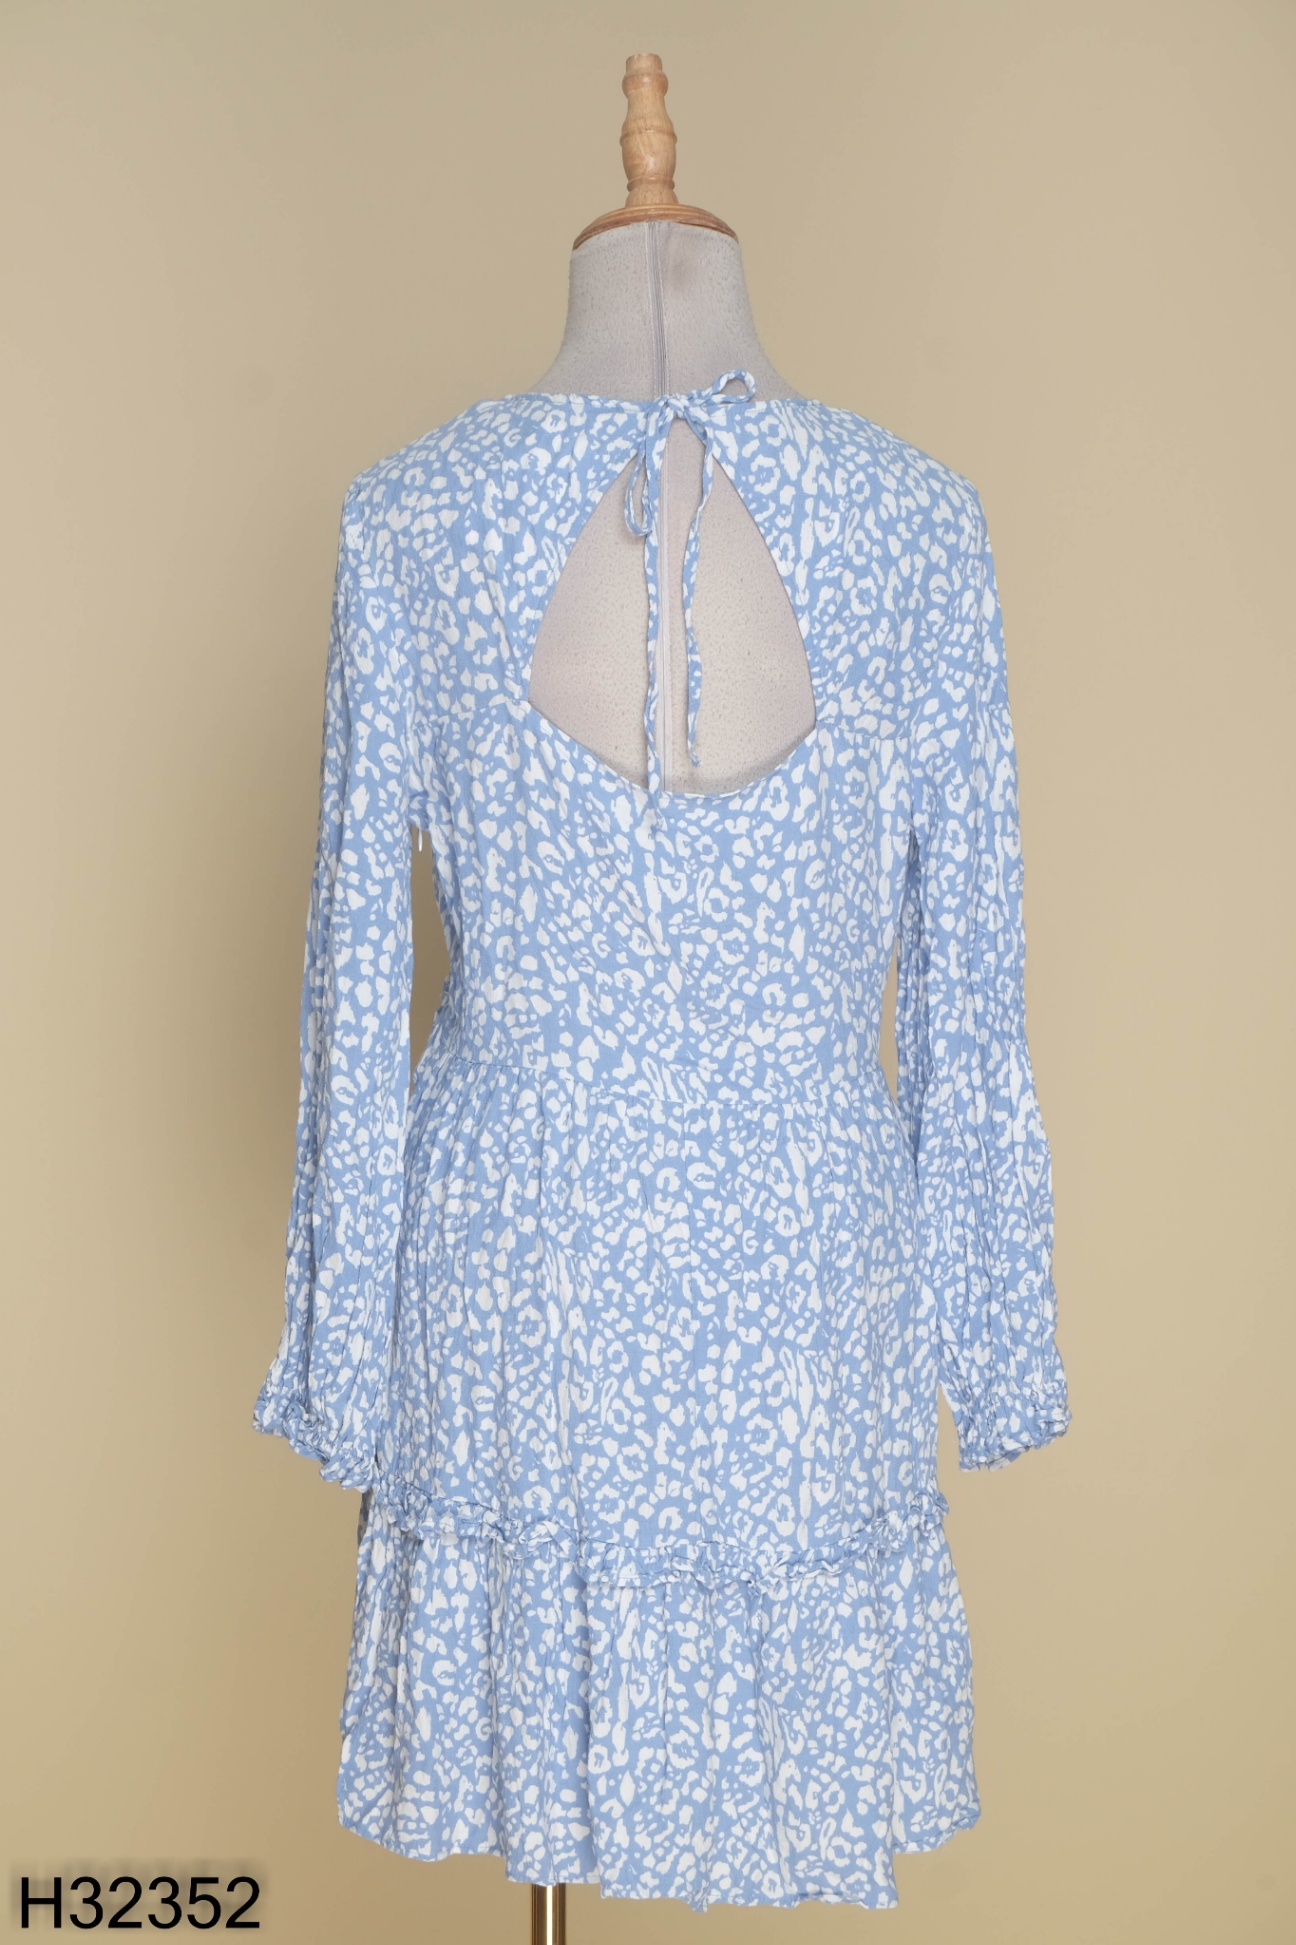 Toàn quốc: - Tìm váy ZARA da báo màu xanh chân ren | Lamchame.com - Nguồn  thông tin tin cậy dành cho cha mẹ